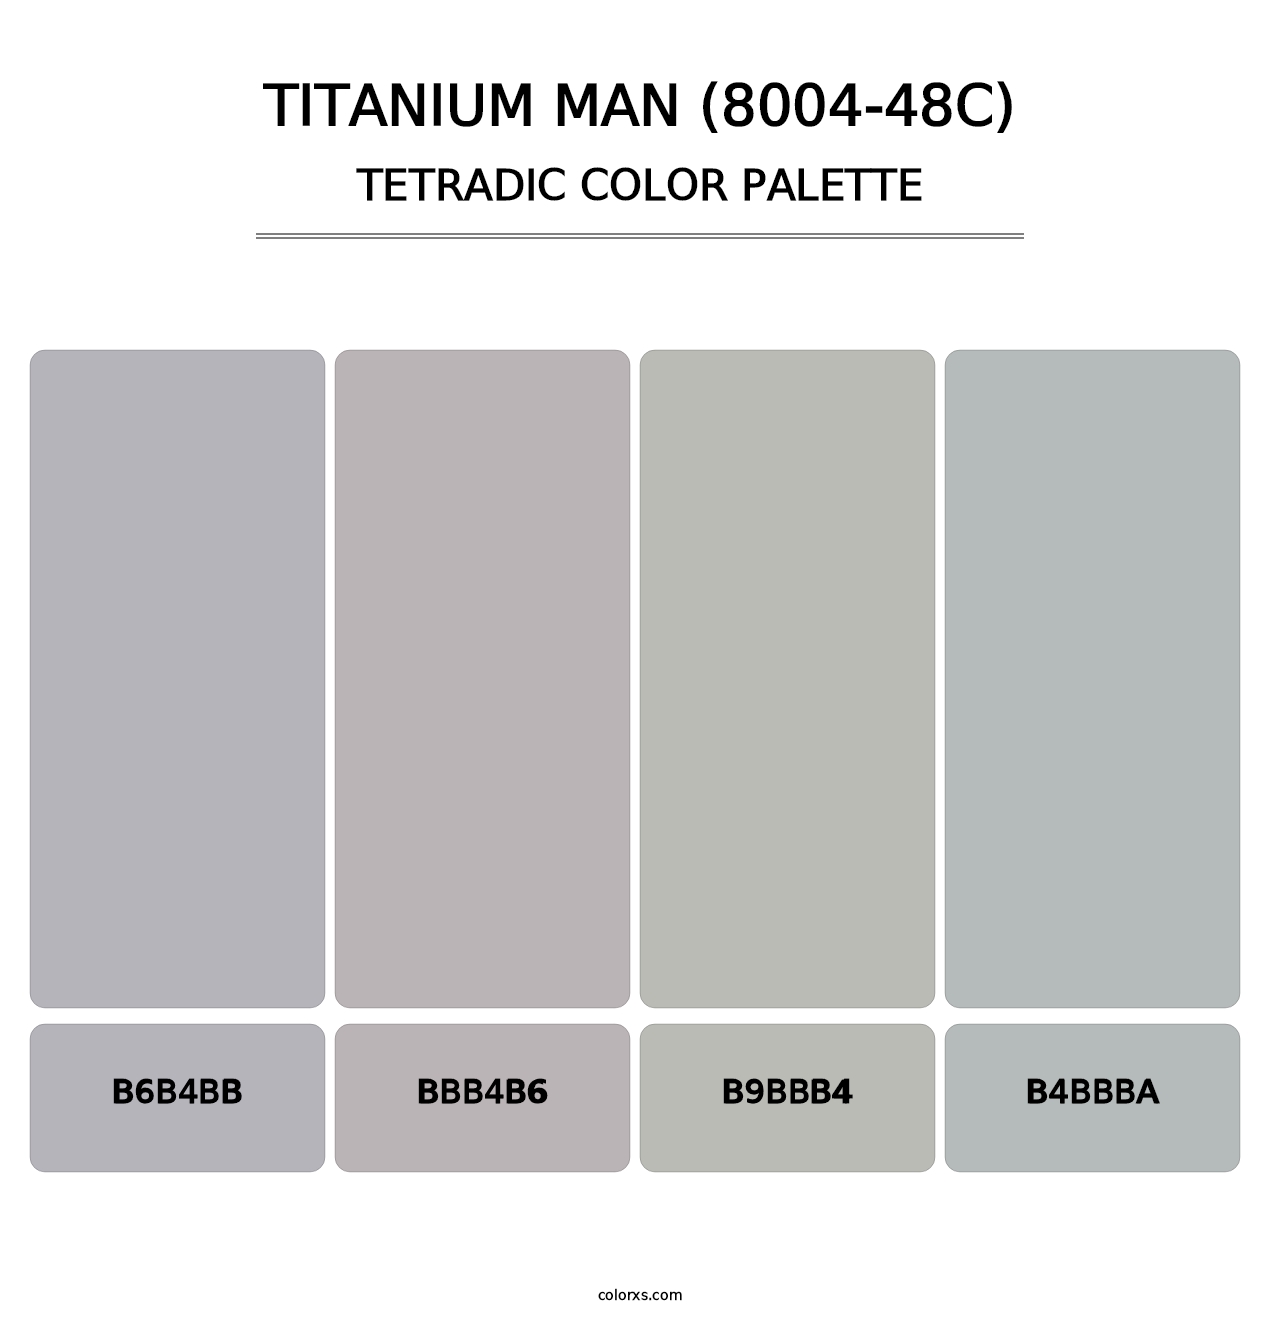 Titanium Man (8004-48C) - Tetradic Color Palette